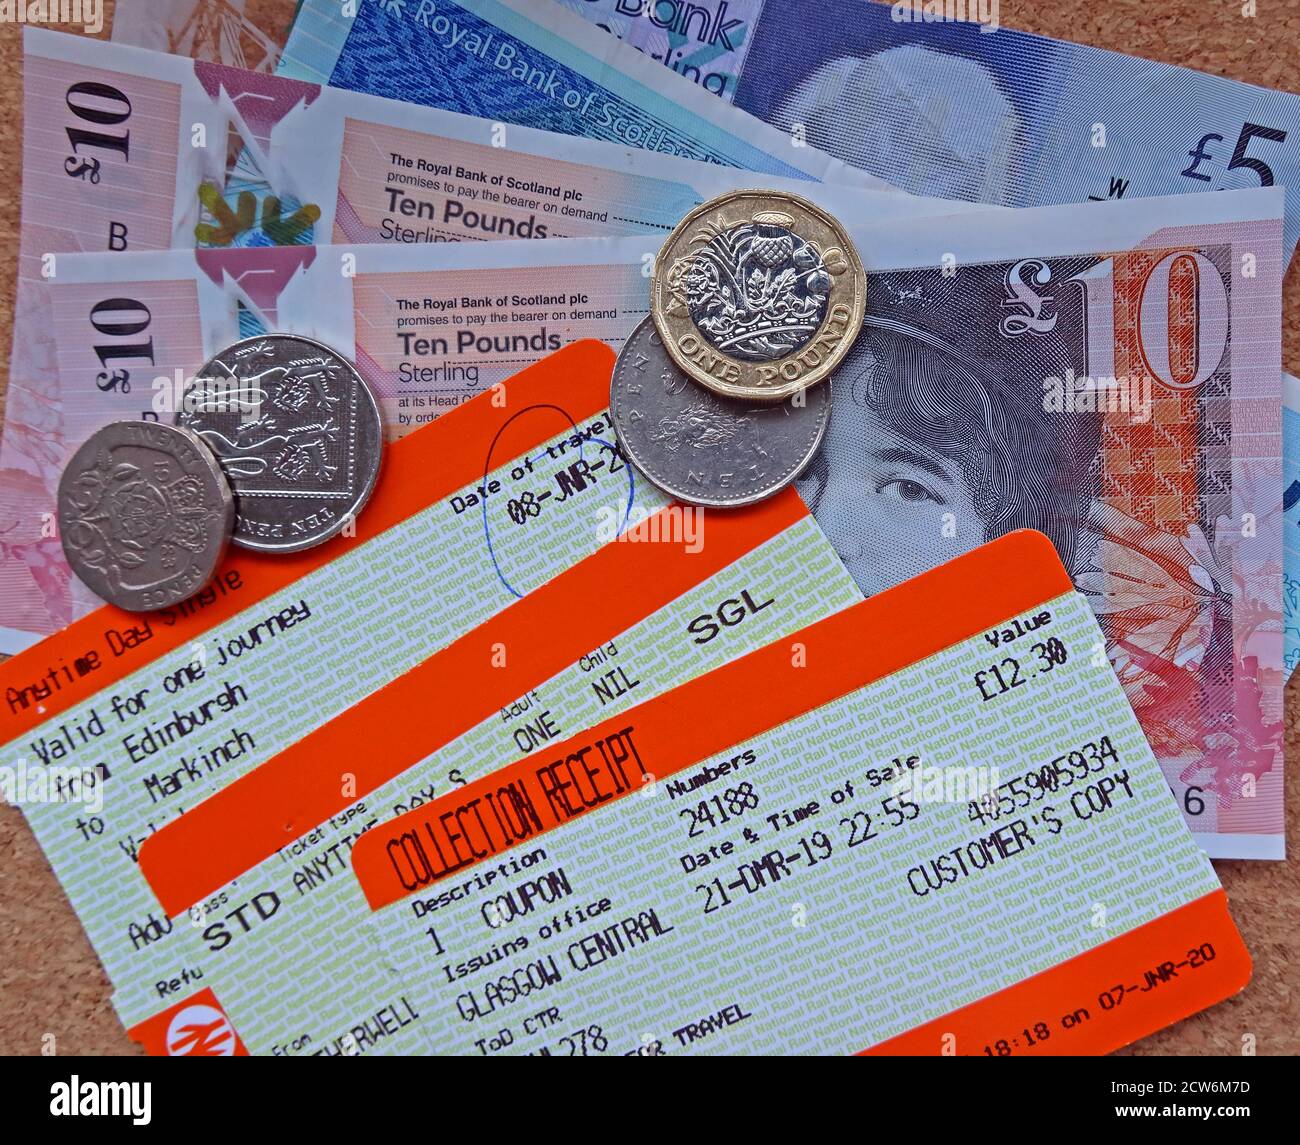 Billets ScotRail, avec billets et pièces Scottish, augmentation du coût des voyages en train et des billets de saison, Écosse, Royaume-Uni Banque D'Images